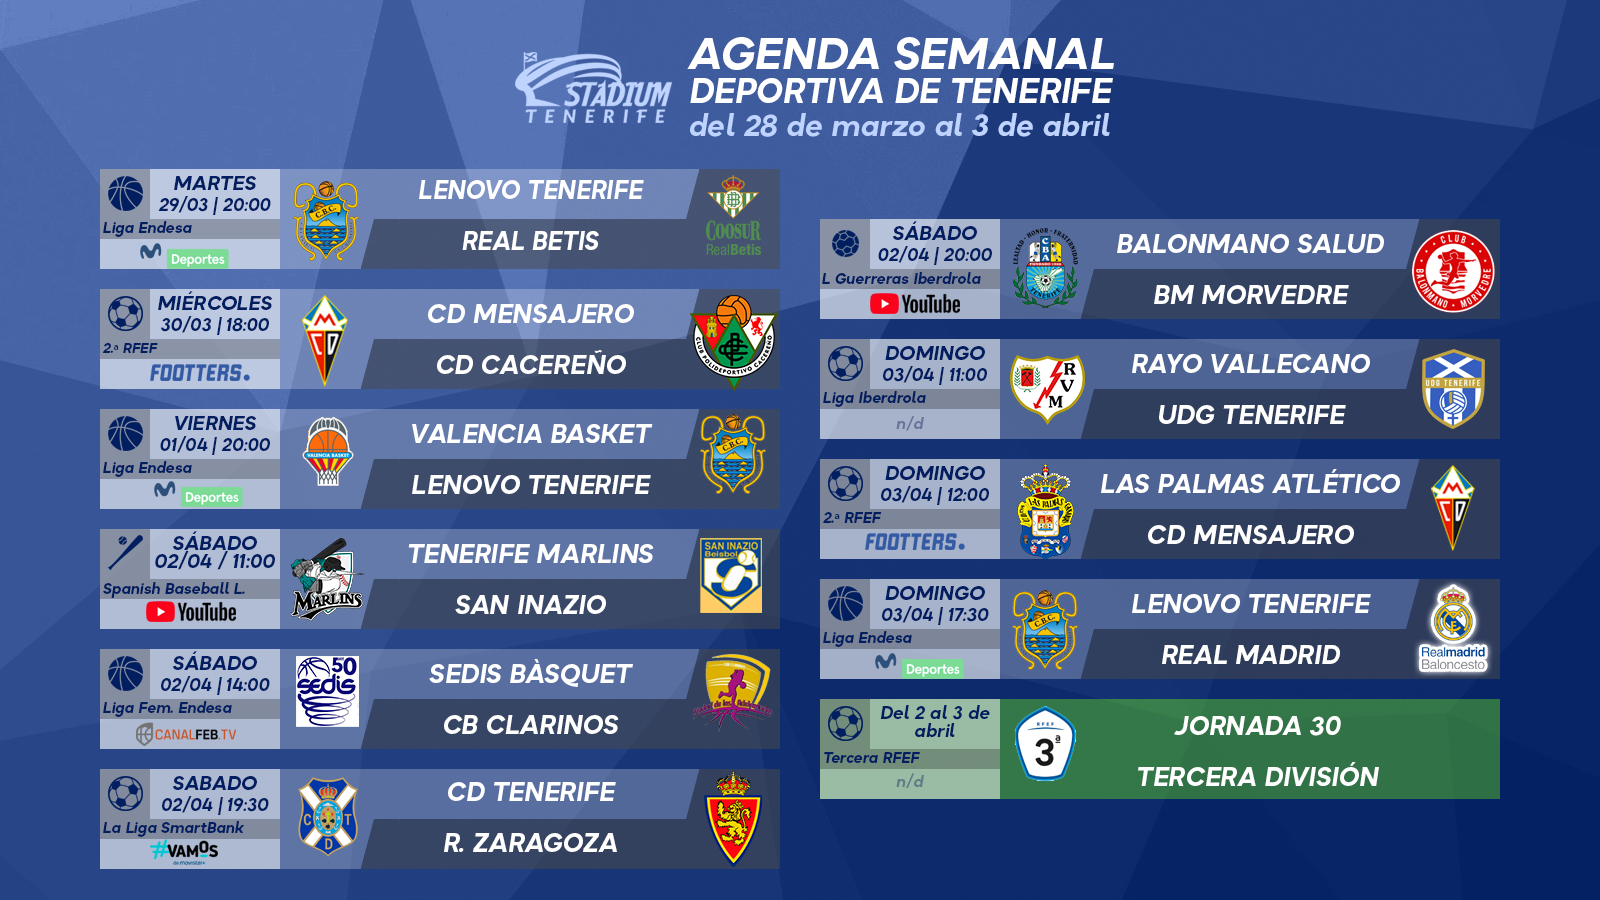 Agenda Semanal Deportiva de Tenerife (28 de marzo al 3 de abril)